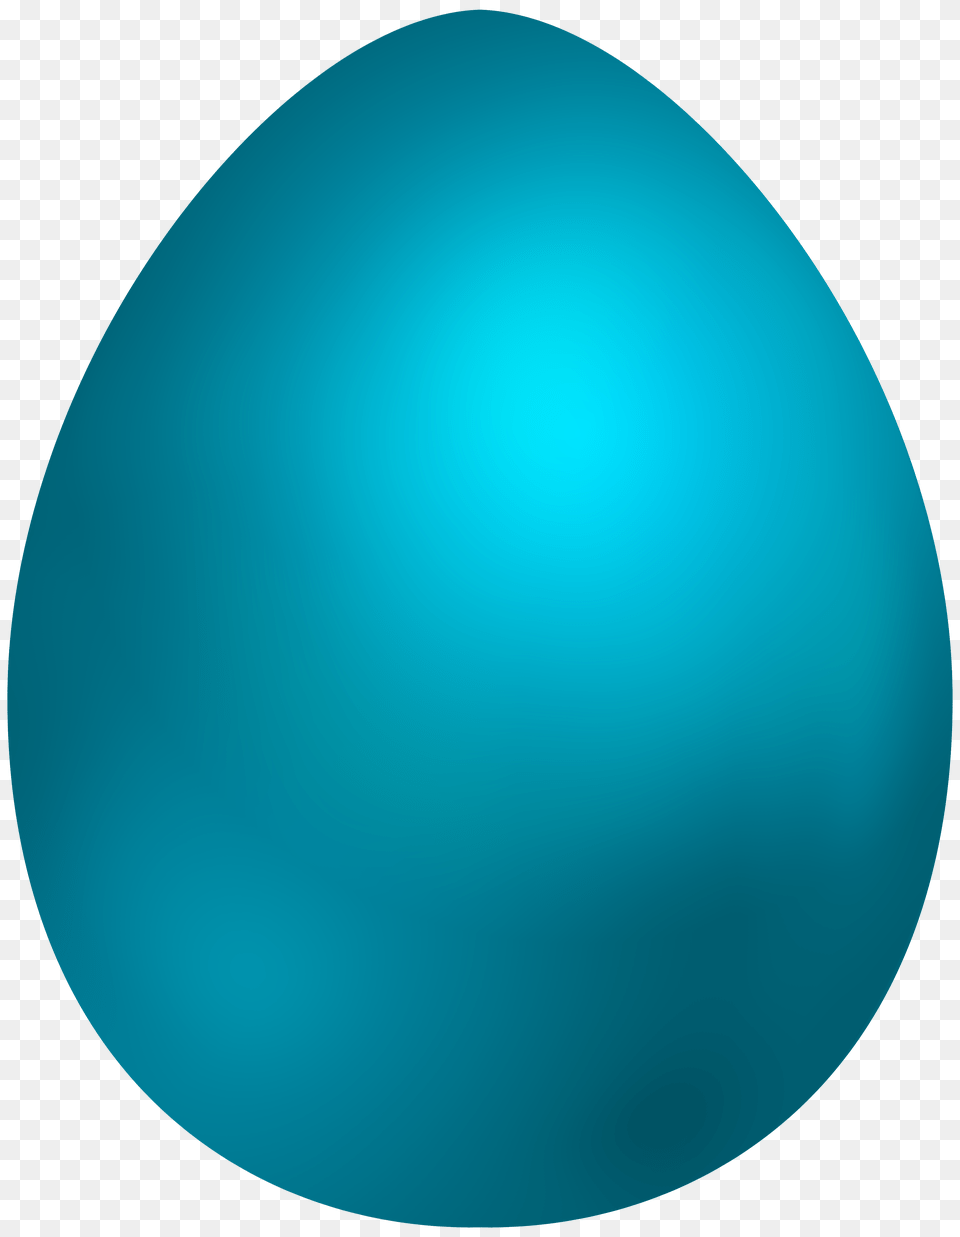 Sky Blue Easter Egg Clip Art, Easter Egg, Food, Clothing, Hardhat Png